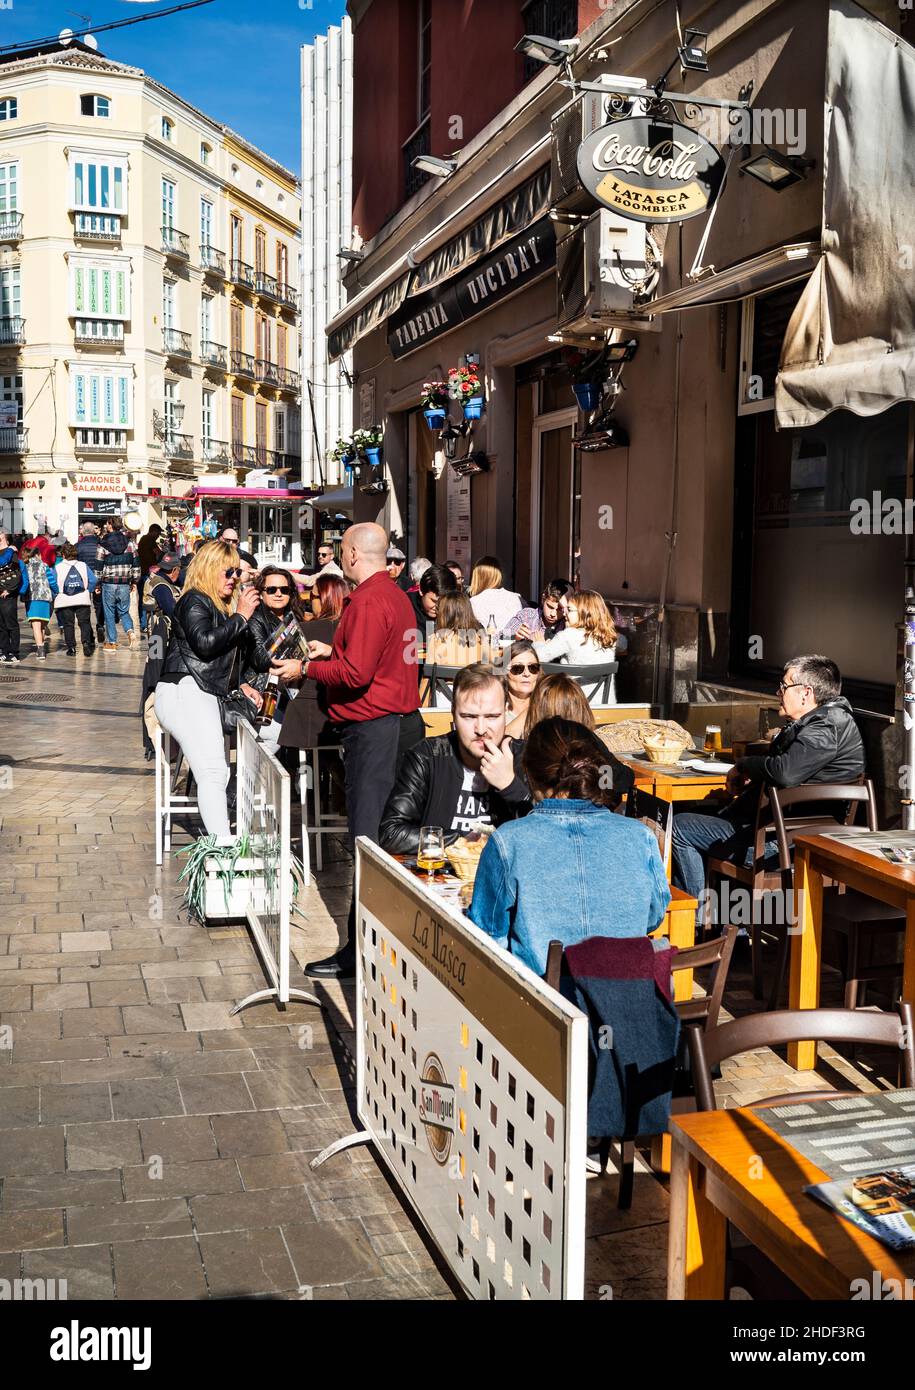 Street scene, Malaga city, Andalusia, Spain Stock Photo